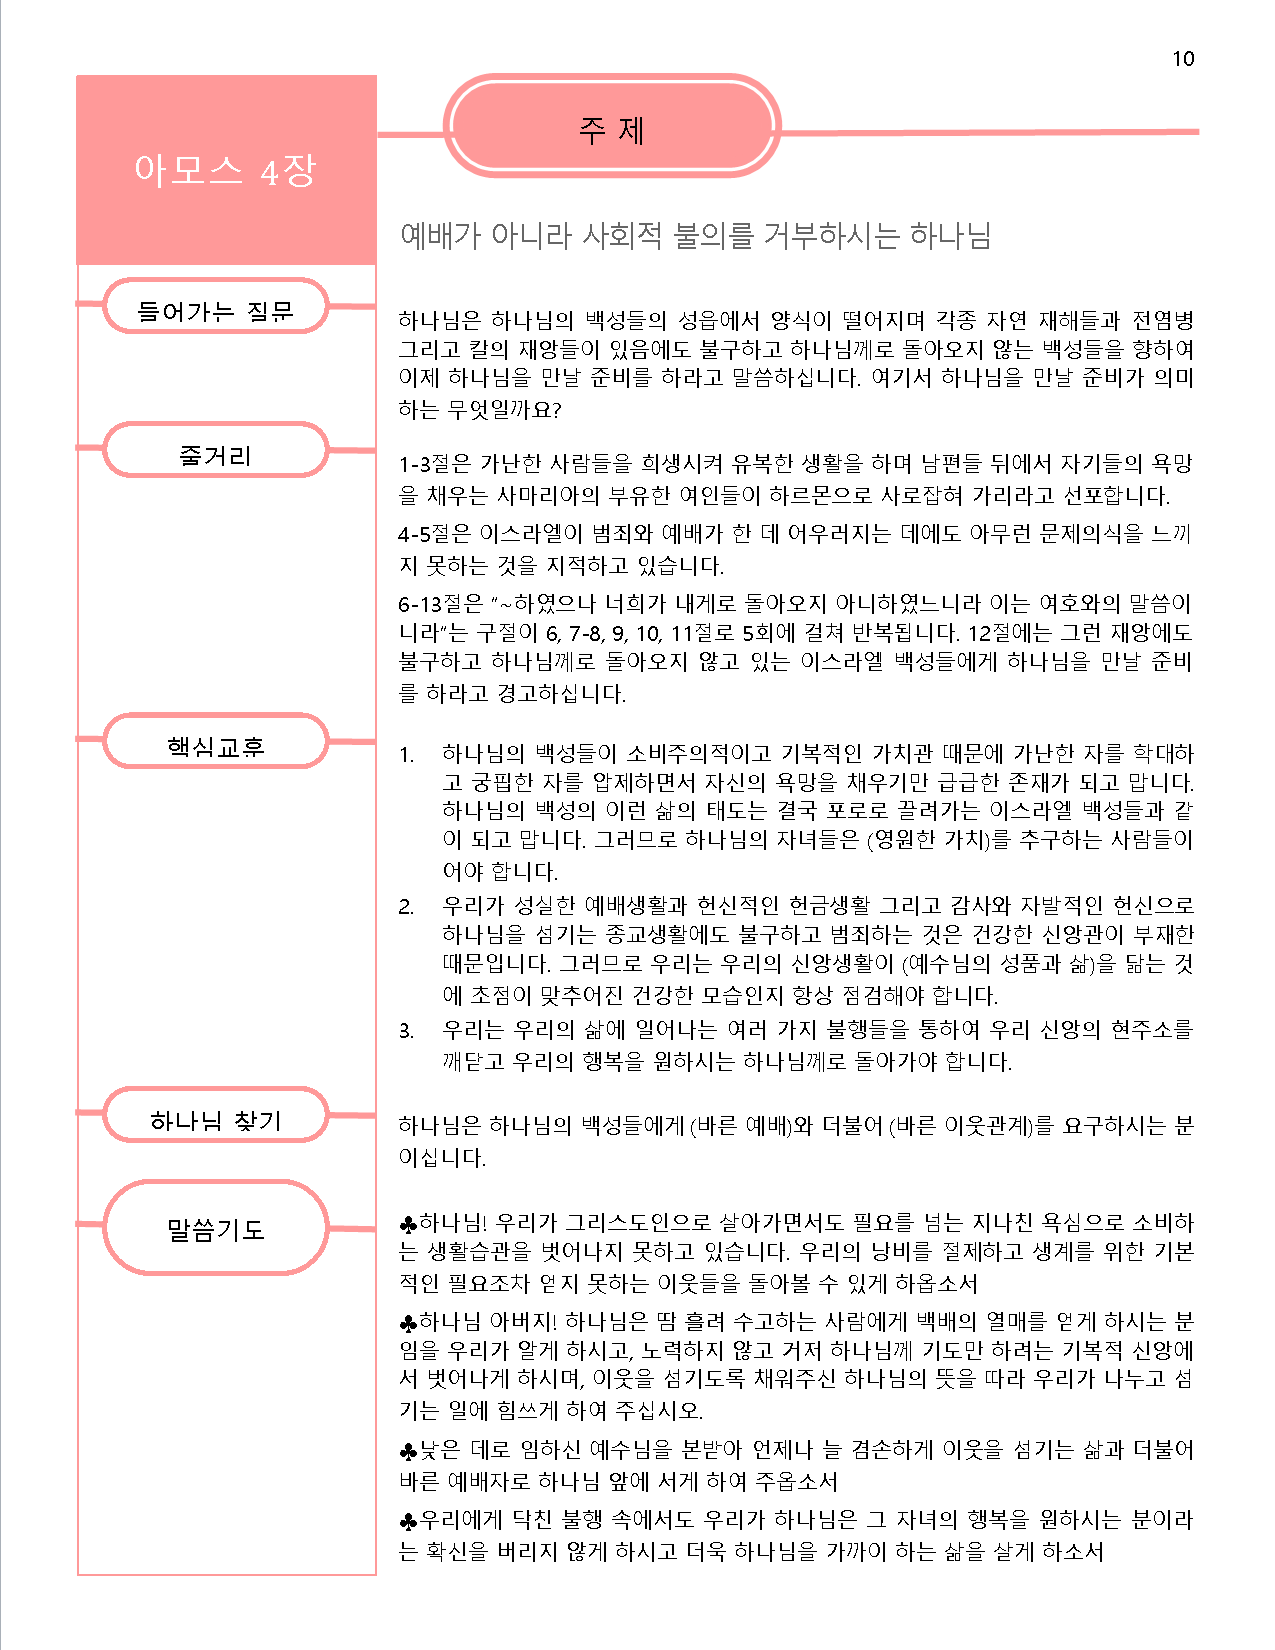 아모스서 강의안4-1.png